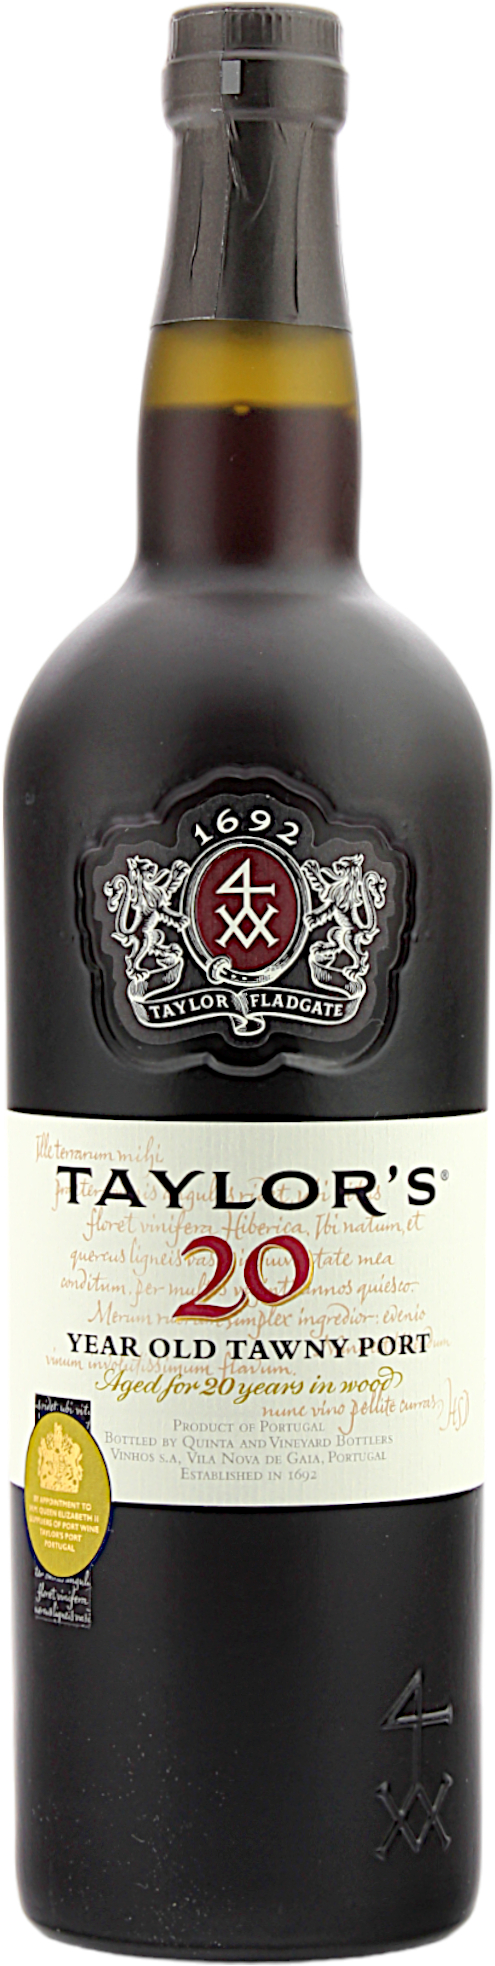 Taylor's Tawny Port 20 Jahre 20.0% 0,75l